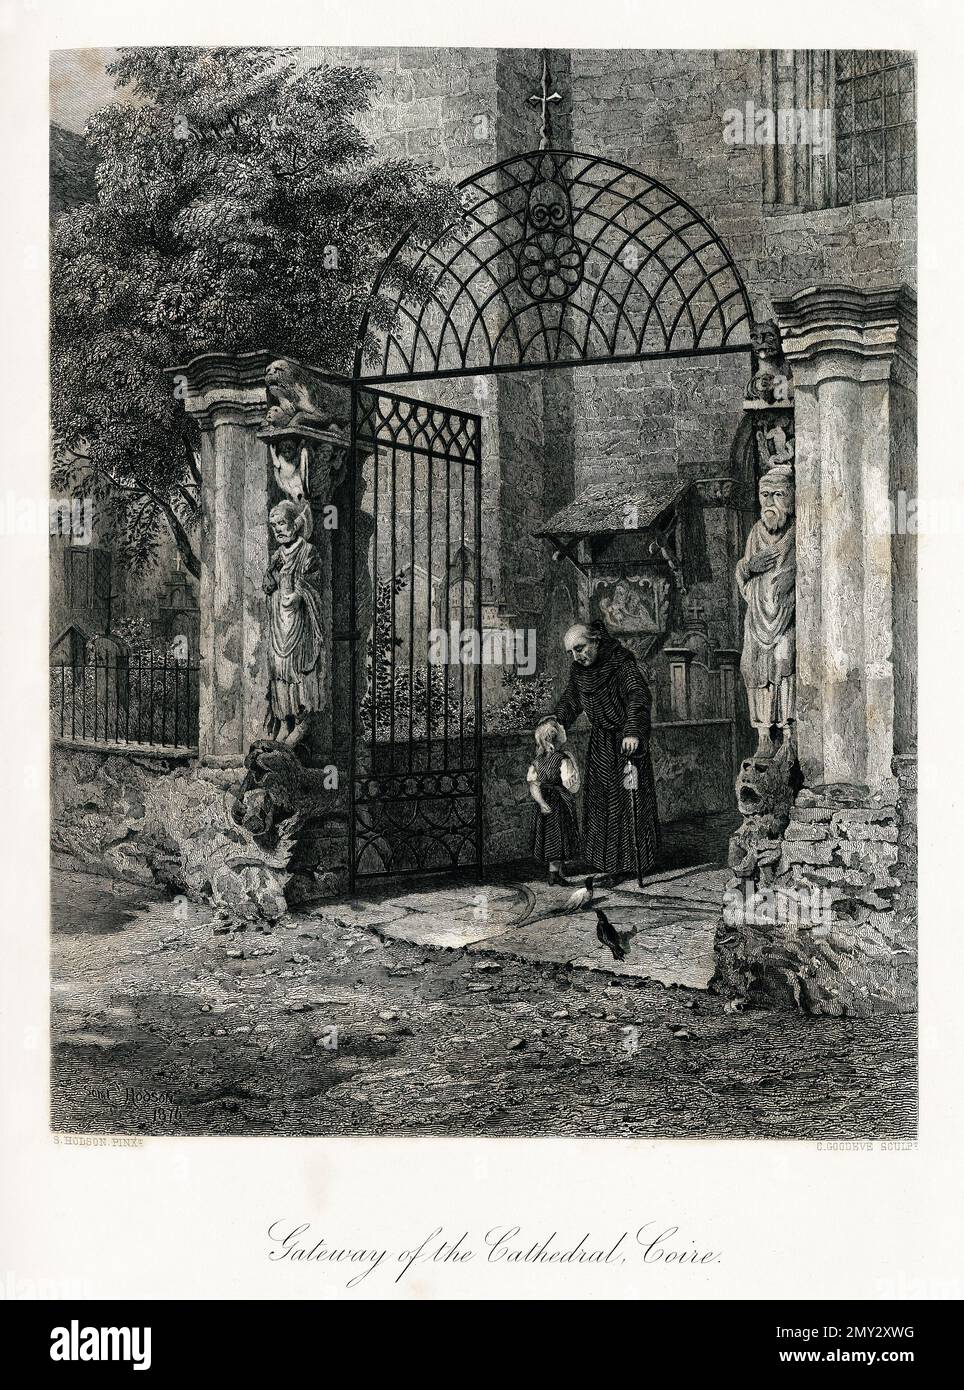 Antica incisione dell'ingresso della cattedrale di Coire (nota anche come Coira), Svizzera. Illustrazione pubblicata in picturesque Europe, Vol. V (C Foto Stock